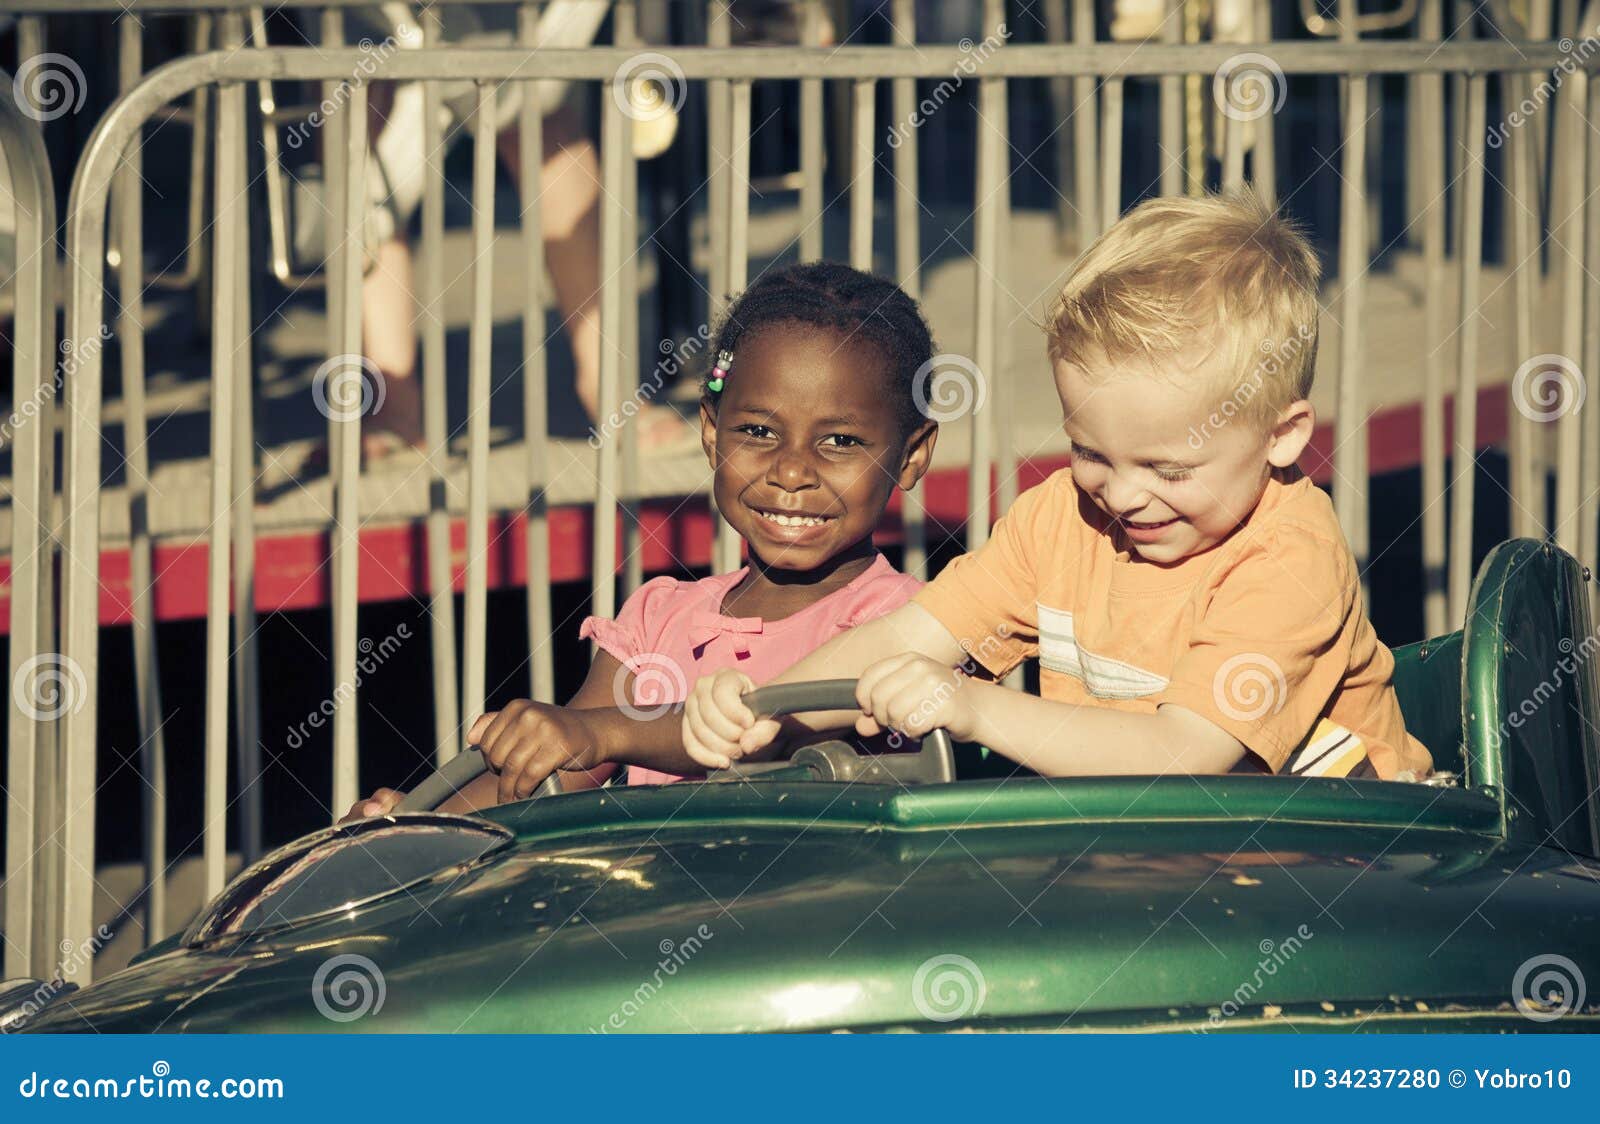 kids on an amusement park ride